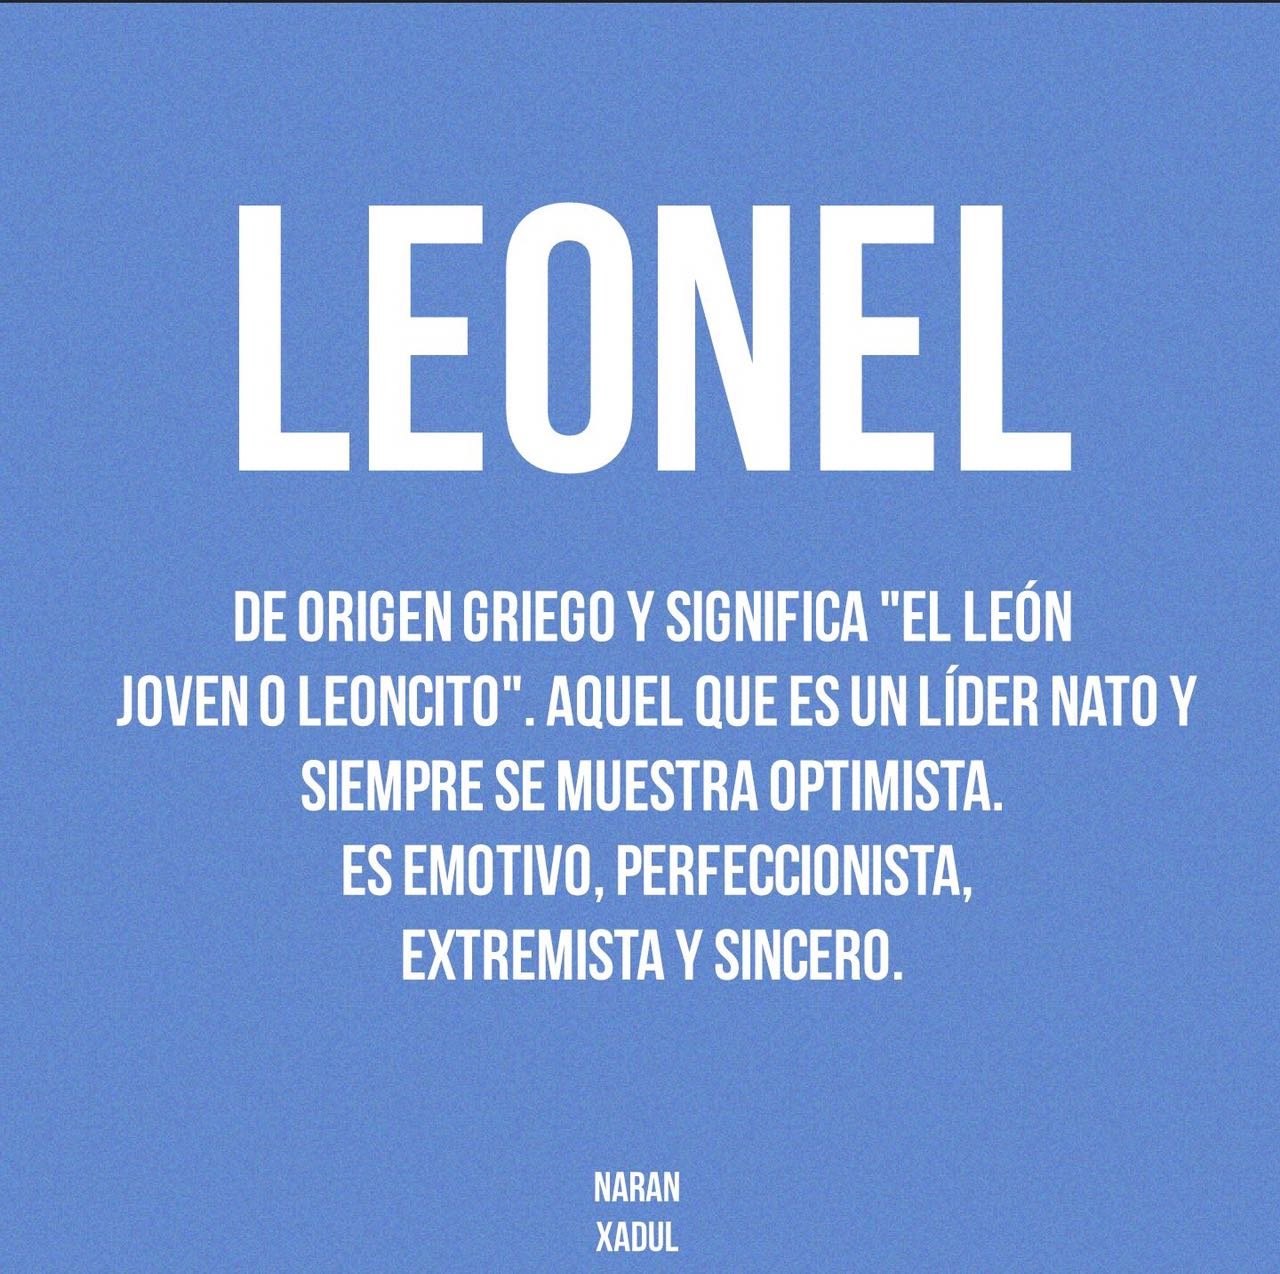 Leonel, S.M.